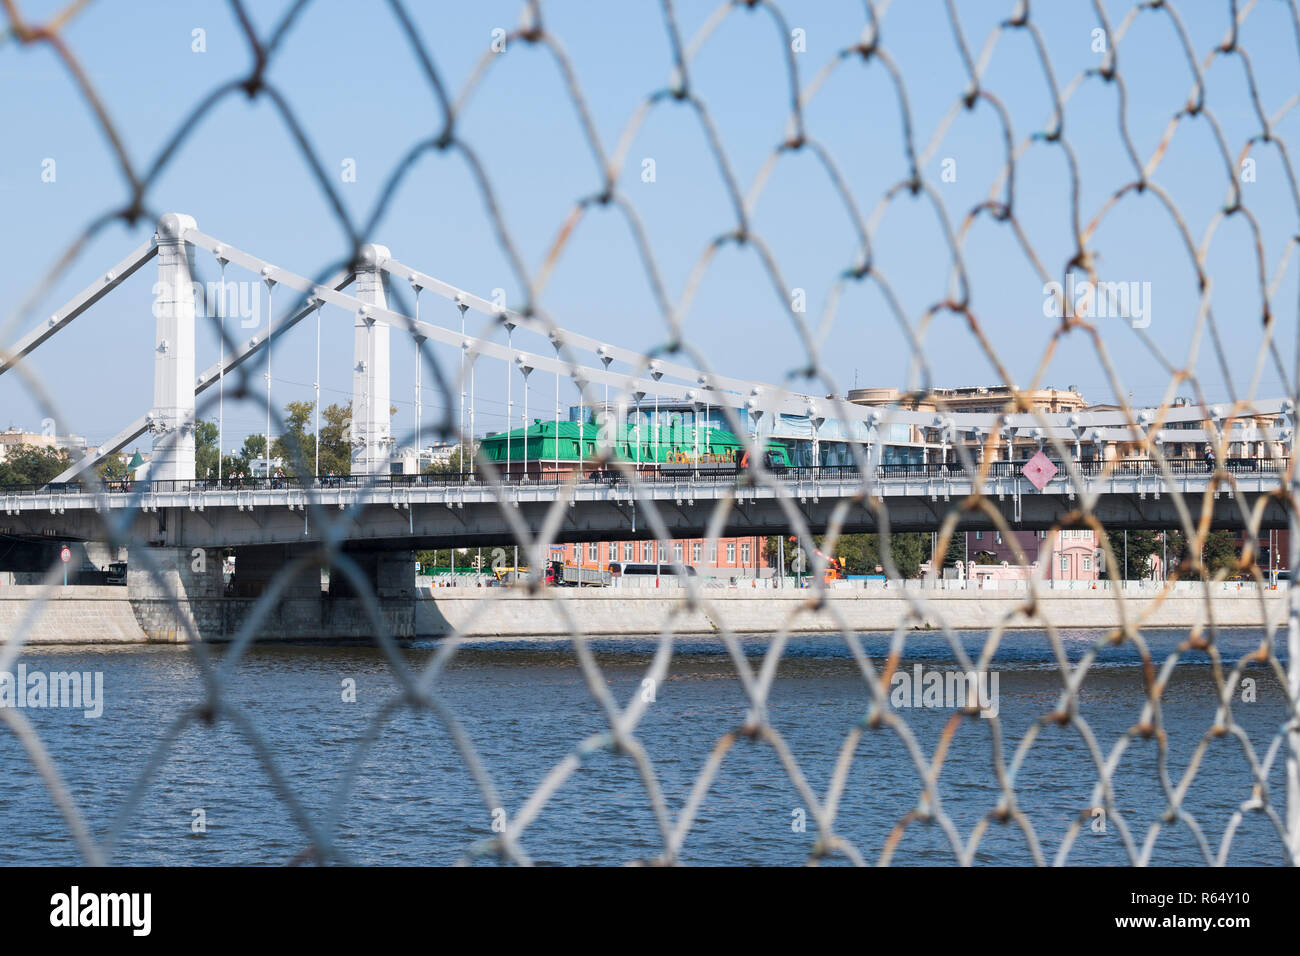 Paysage d'un pont suspendu au-dessus de la rivière Moskova. Une vue de derrière la grille (Rabitz). La notion de restriction de la liberté de circulation. Banque D'Images